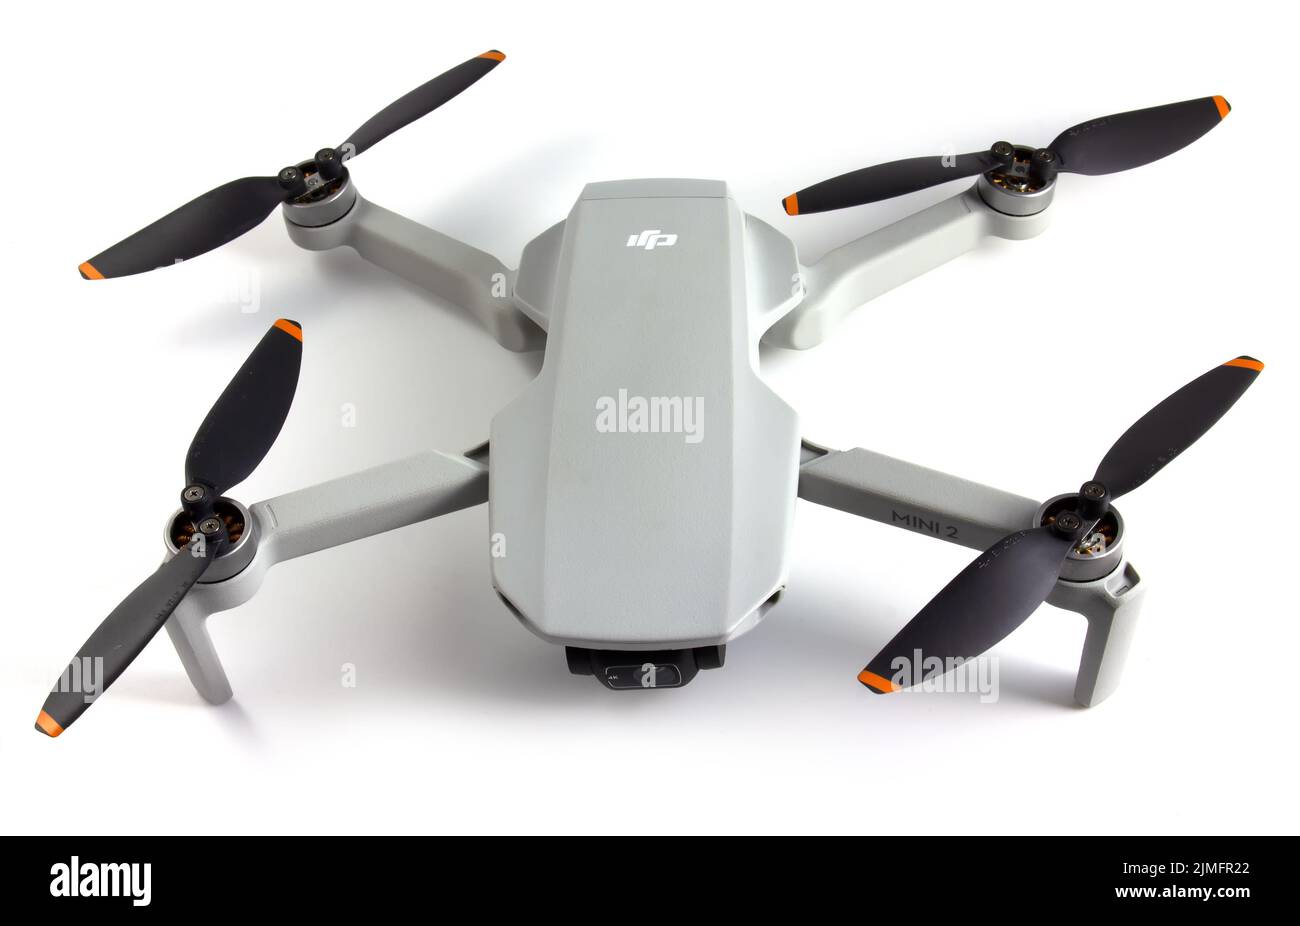 DJI mavic mini 2, le plus petit drone lancé par DJI. Drone pesant seulement 249 g. Isolé sur fond blanc. Vinnytsia, Ukrain Banque D'Images